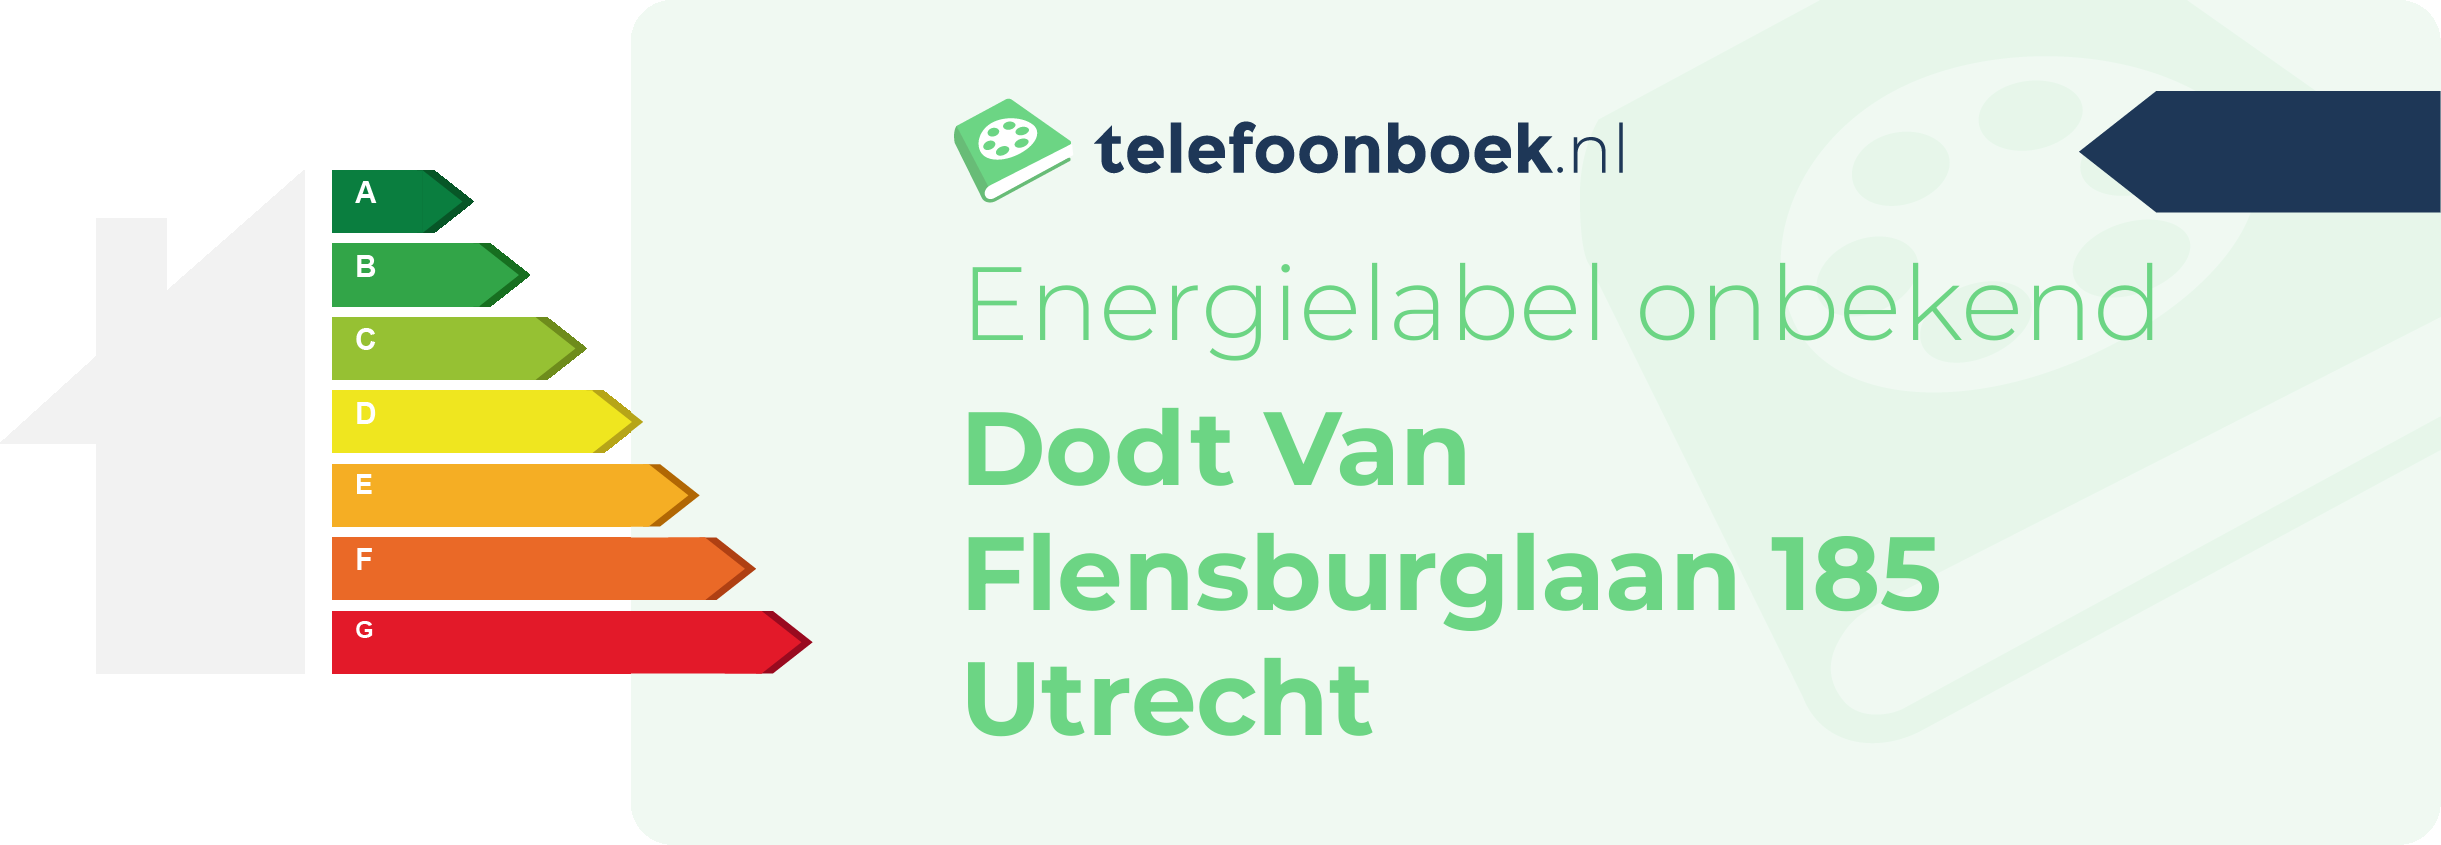 Energielabel Dodt Van Flensburglaan 185 Utrecht